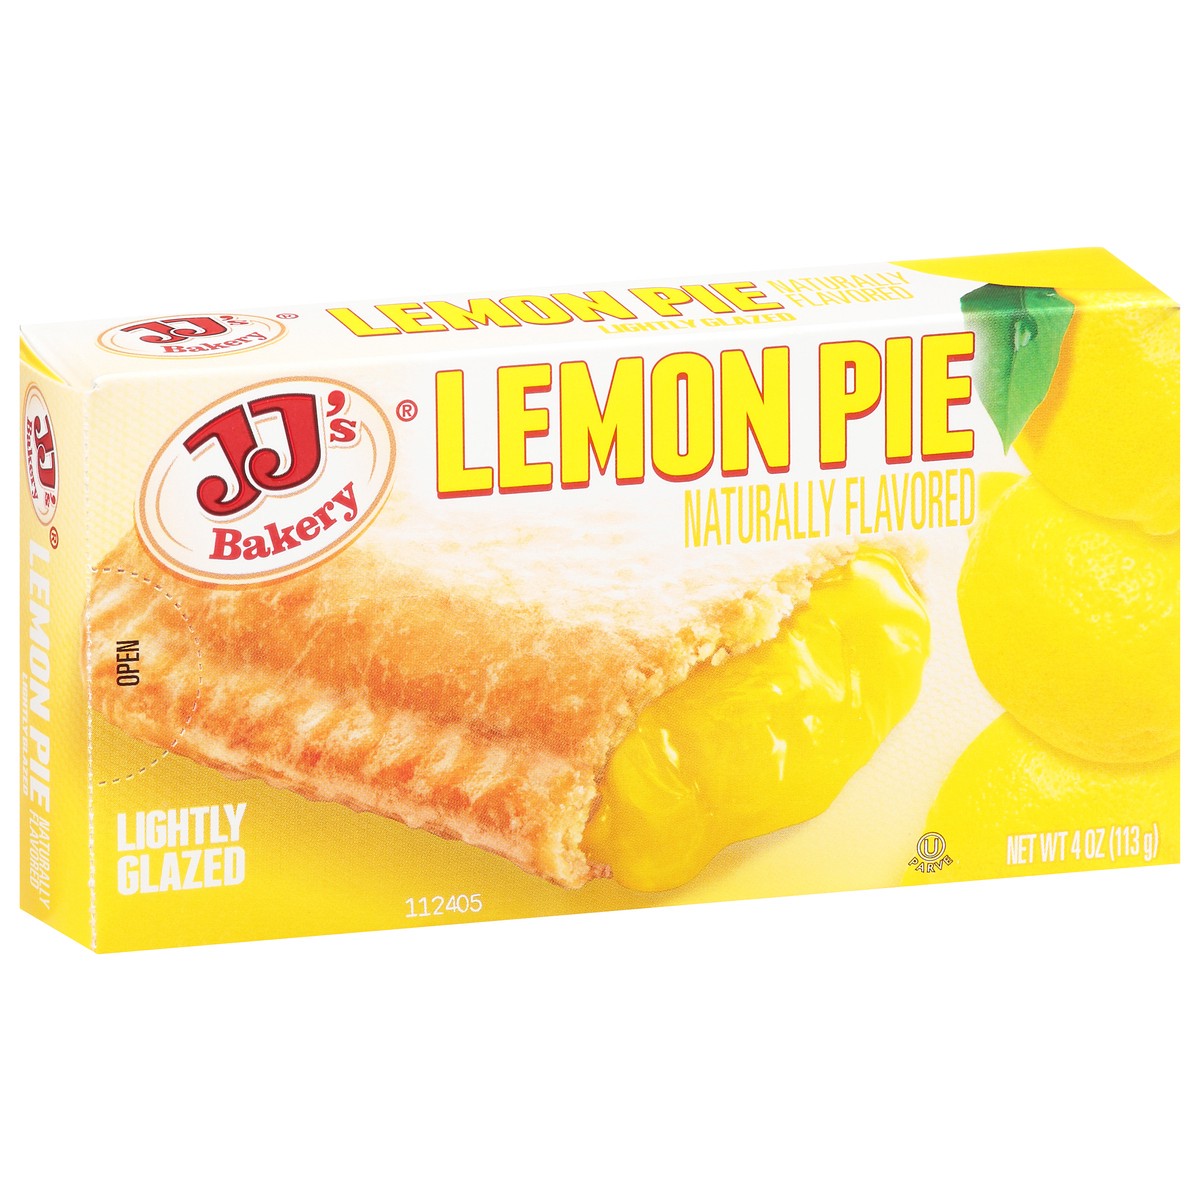 slide 8 of 13, JJ's Bakery Lightly Glazed Lemon Pie 4 oz, 4 oz